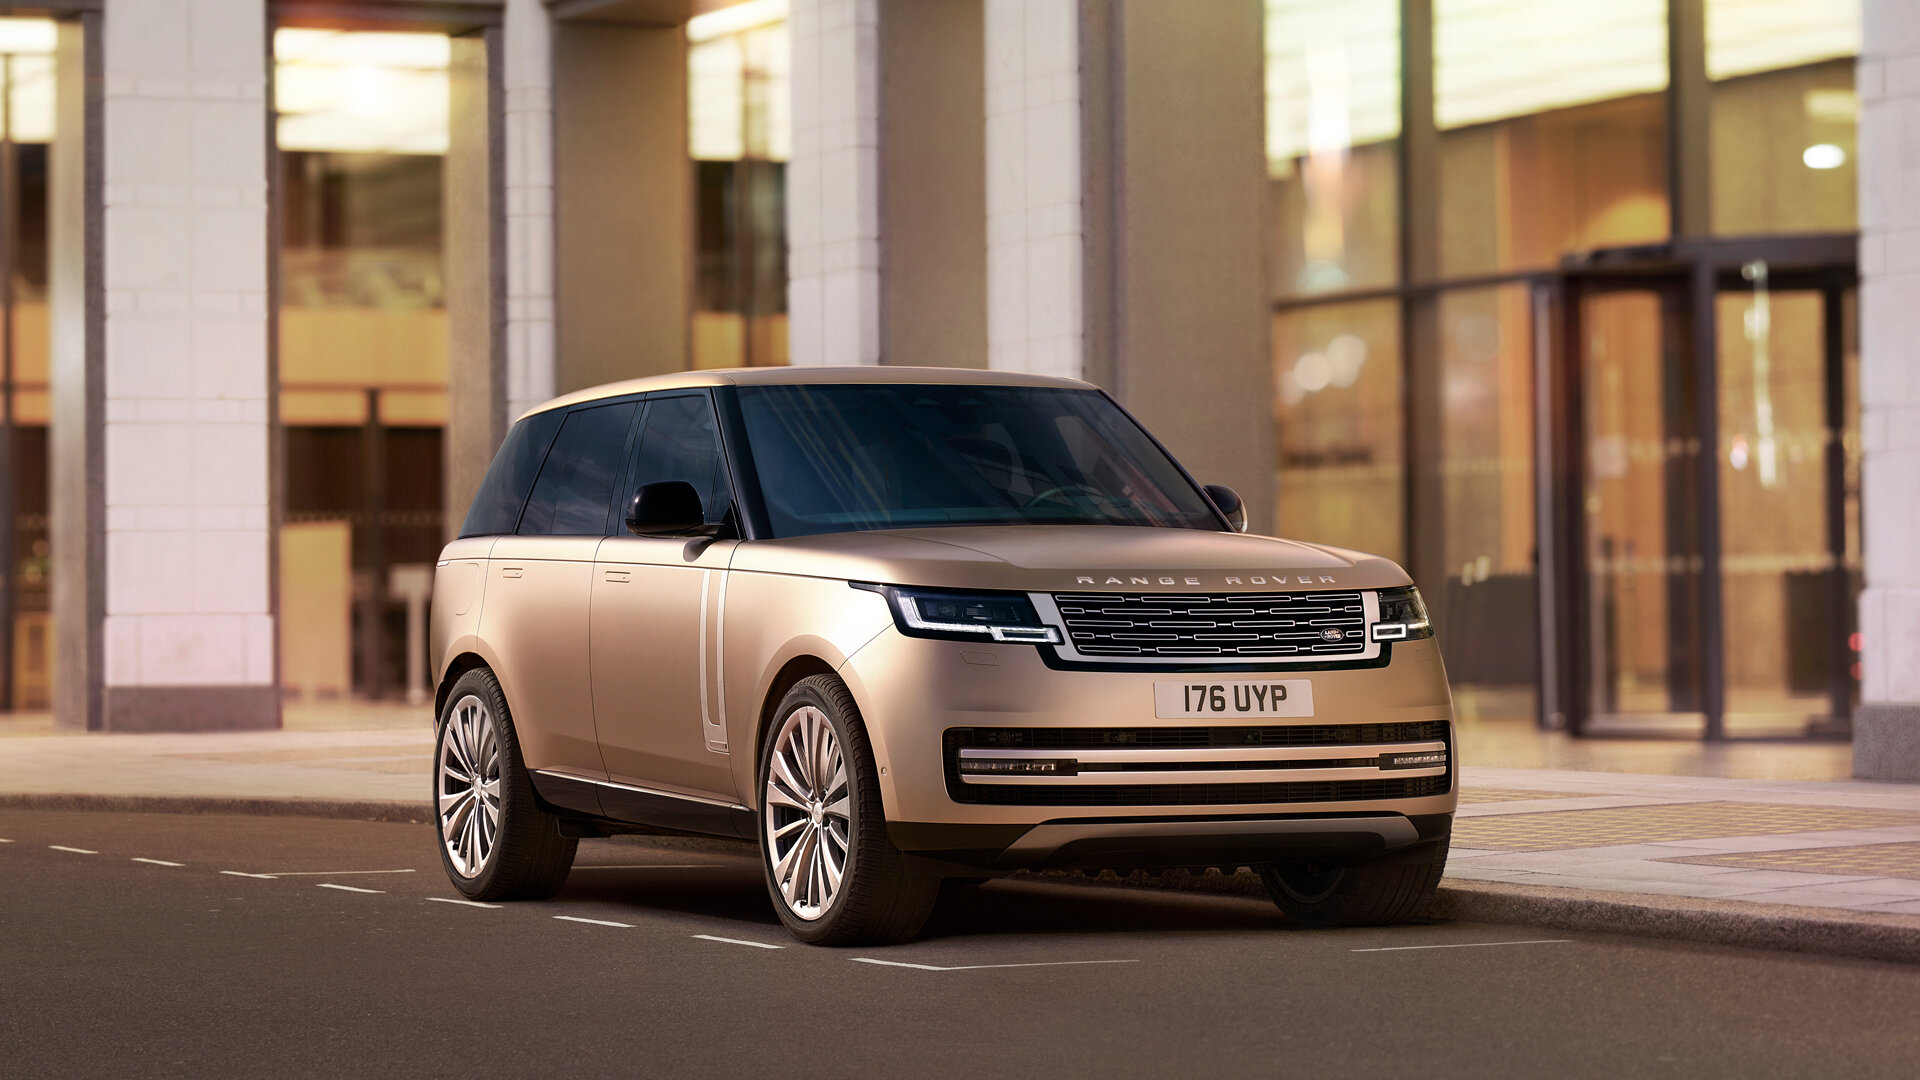 Новый Range Rover превратился в гибрид, а в будущем станет электрокаром